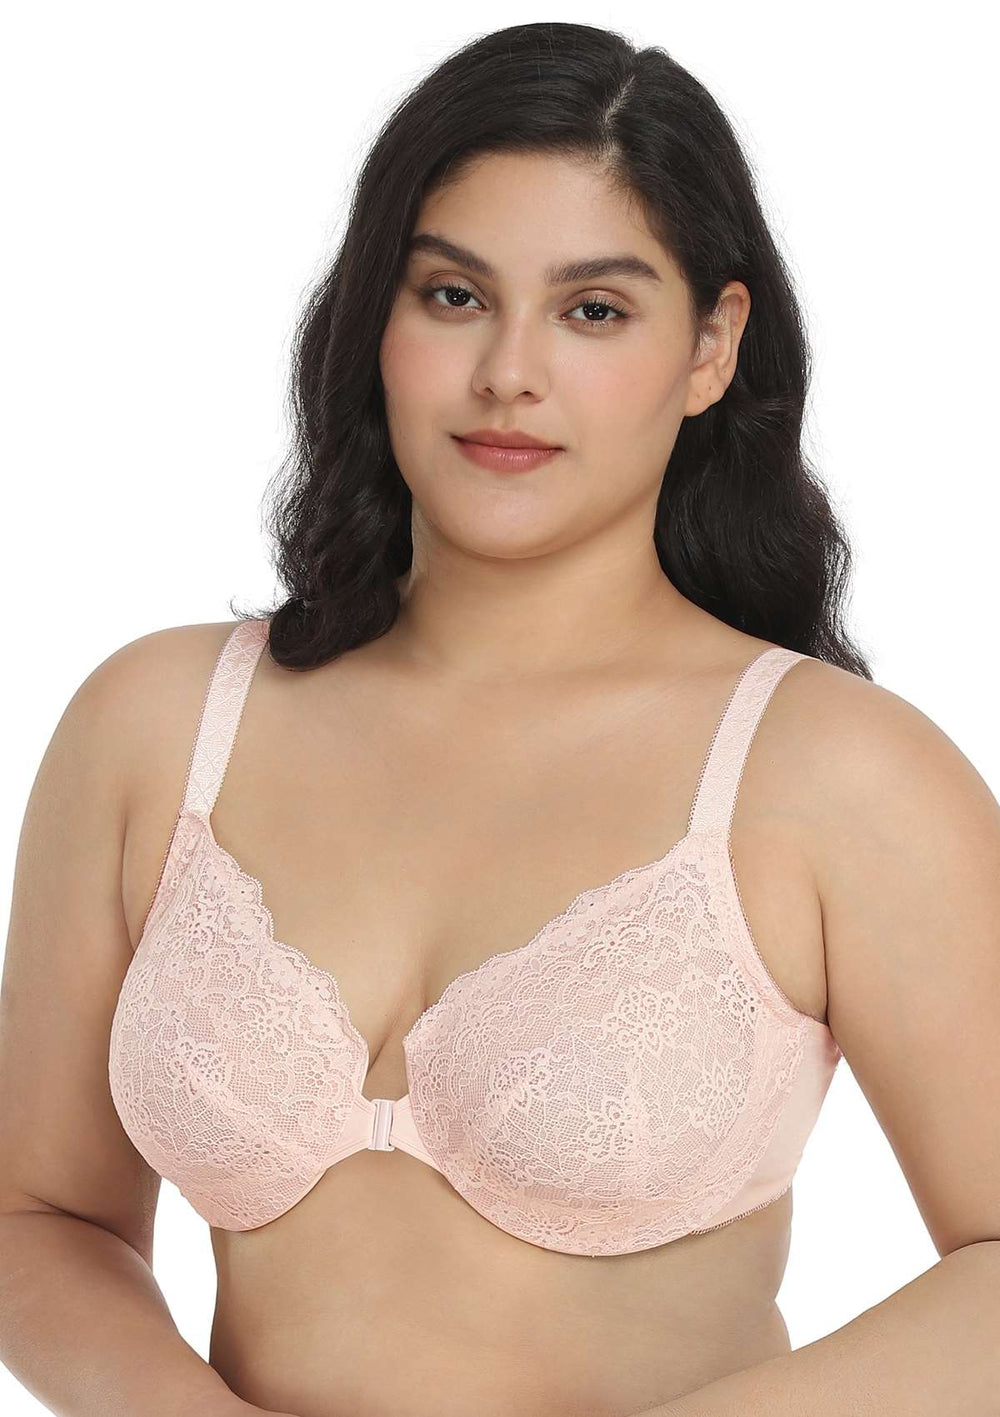 Minimiser Bra Size 42H - Buy Online, Underwire bras